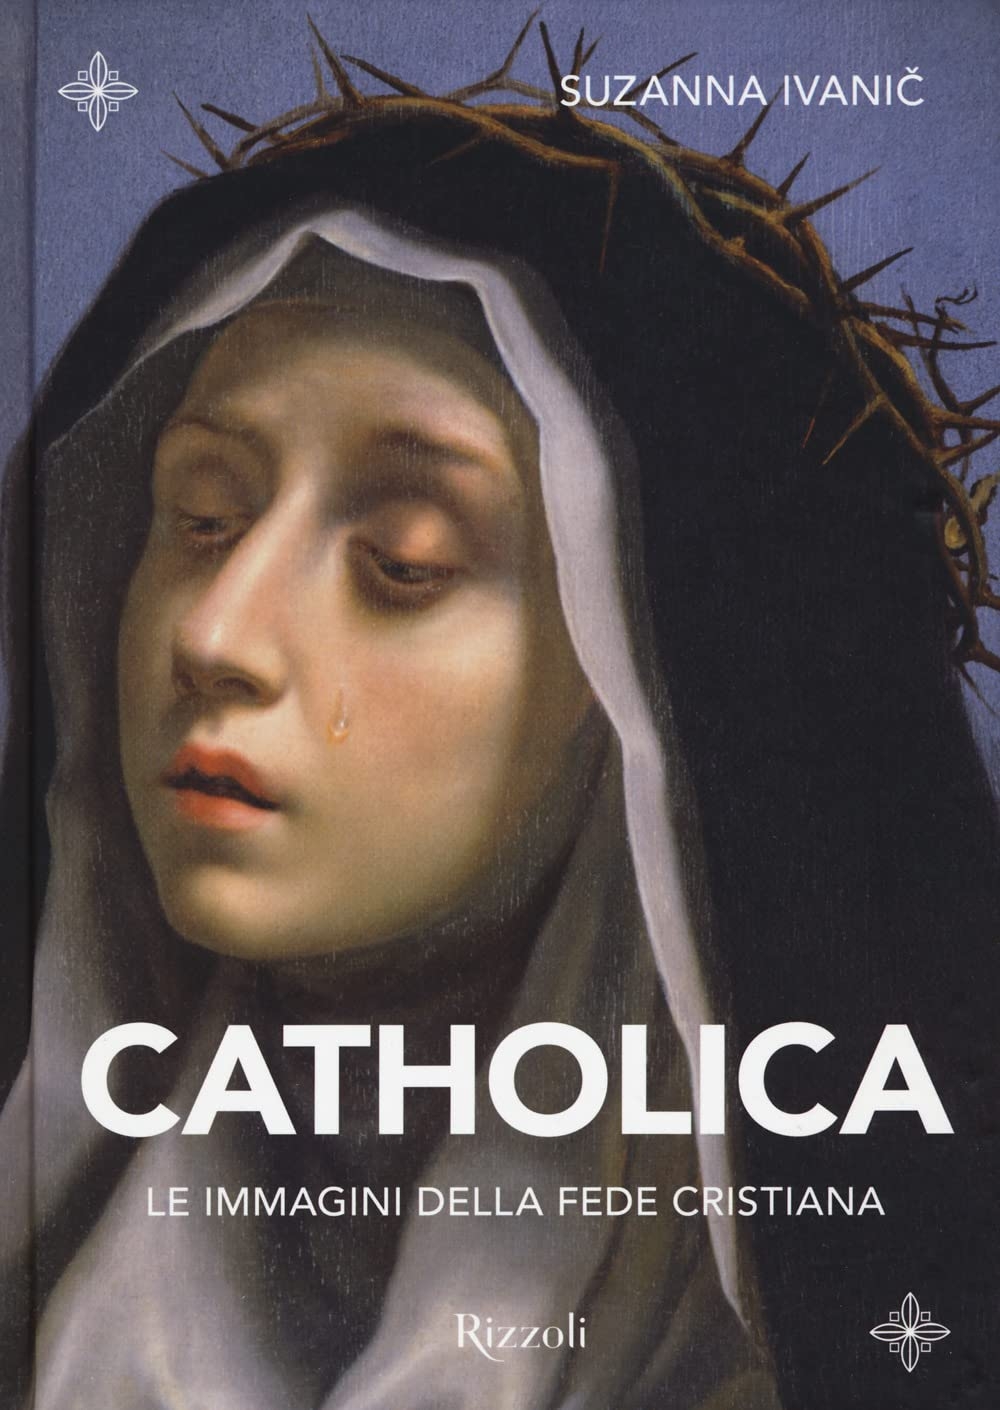 Suzanna Ivanič – Catholica. Le immagini della fede cristiana (Rizzoli, Milano 2022)